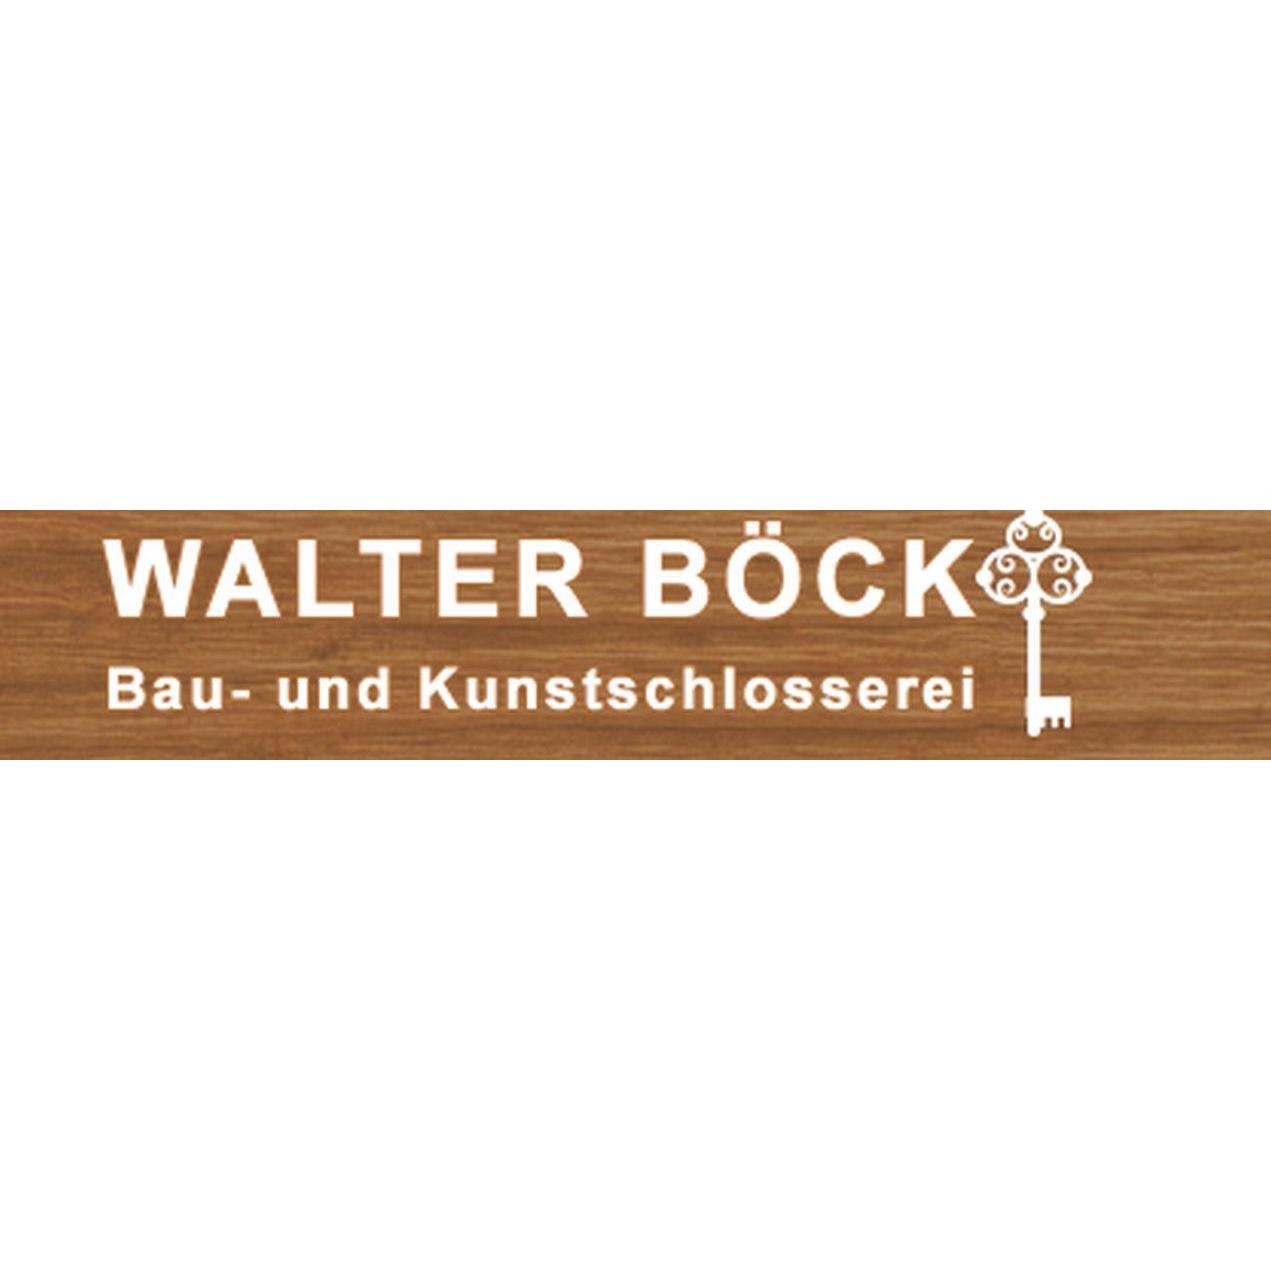 Walter Böck – Bau- und Kunstschlosserei Logo